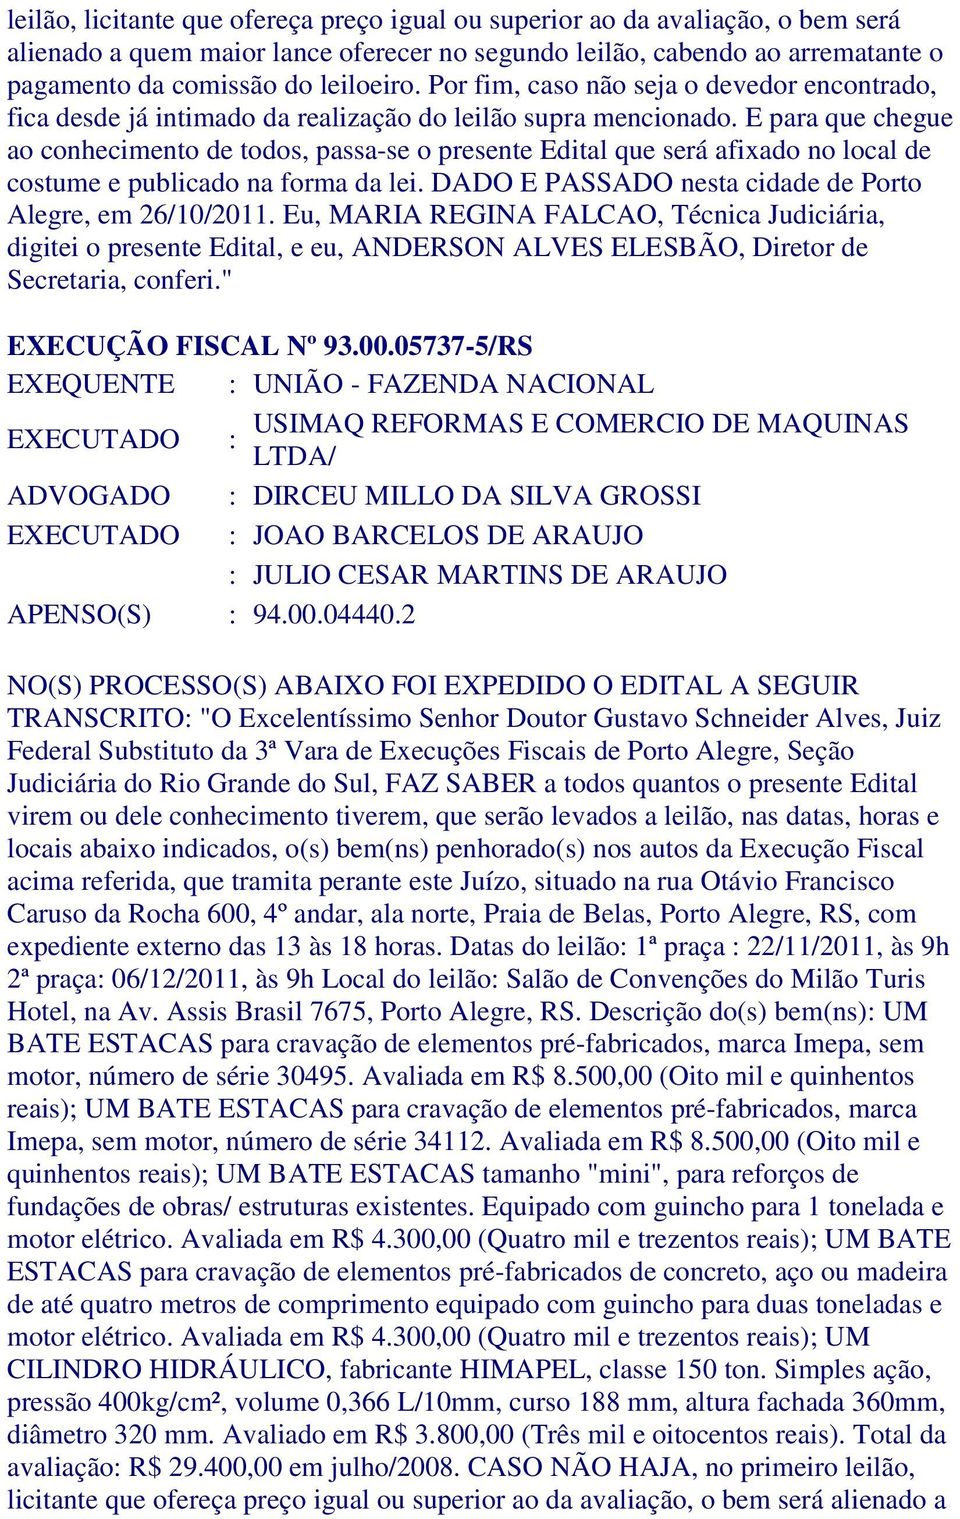 E para que chegue ao conhecimento de todos, passa-se o presente Edital que será afixado no local de costume e publicado na forma da lei. DADO E PASSADO nesta cidade de Porto Alegre, em 26/10/2011.